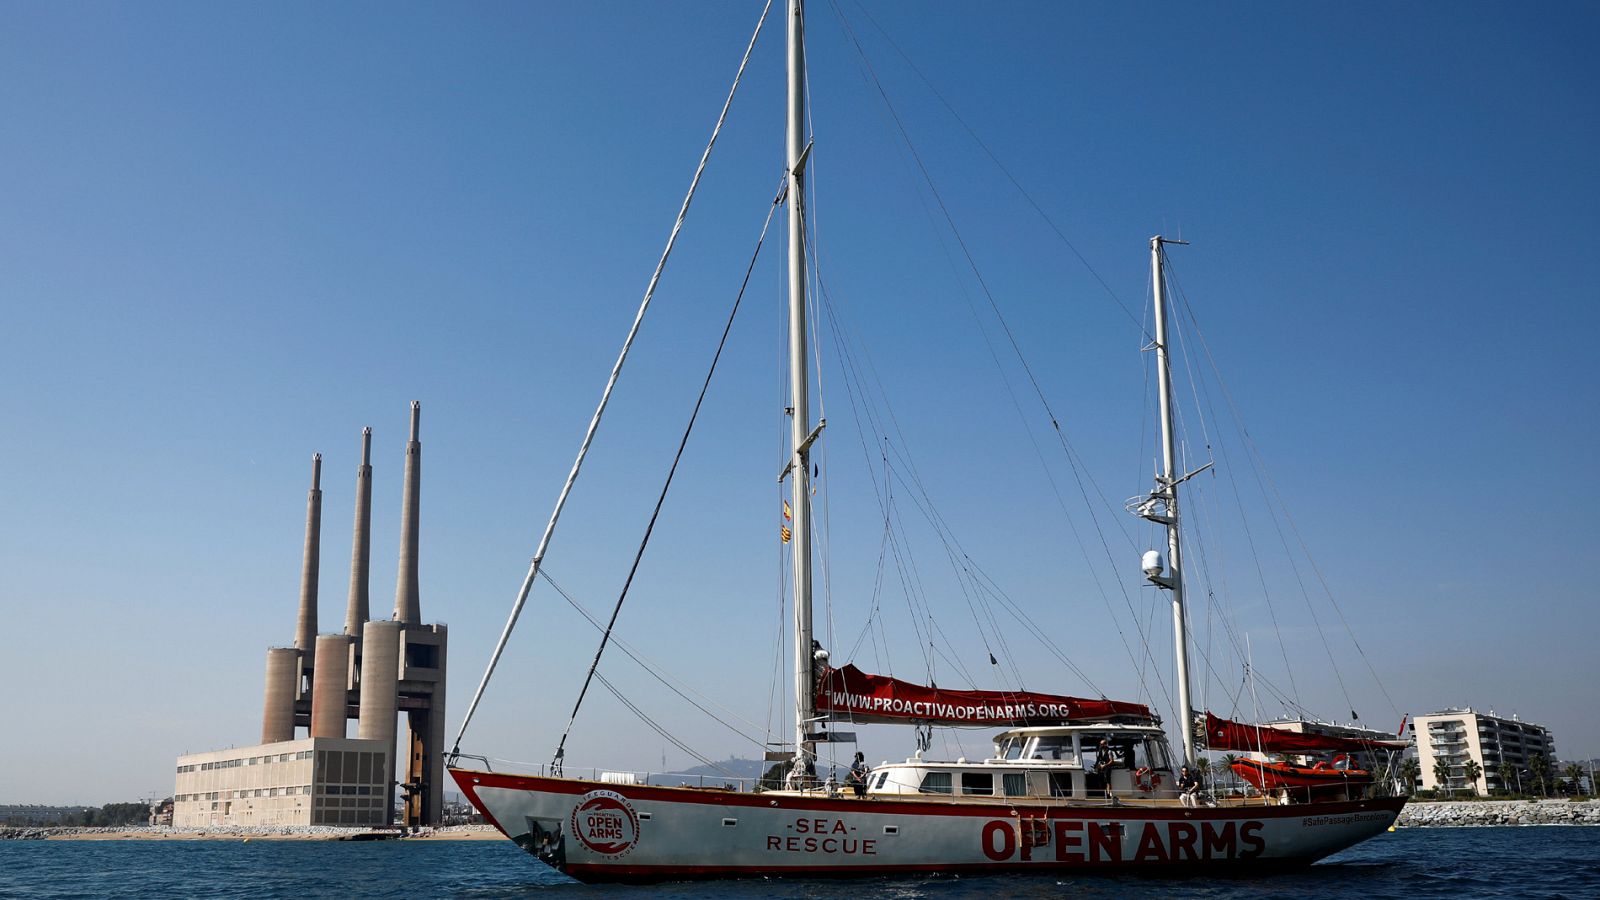 Lampedusa recuerda el naufragio de 368 personas que conmovió al mundo